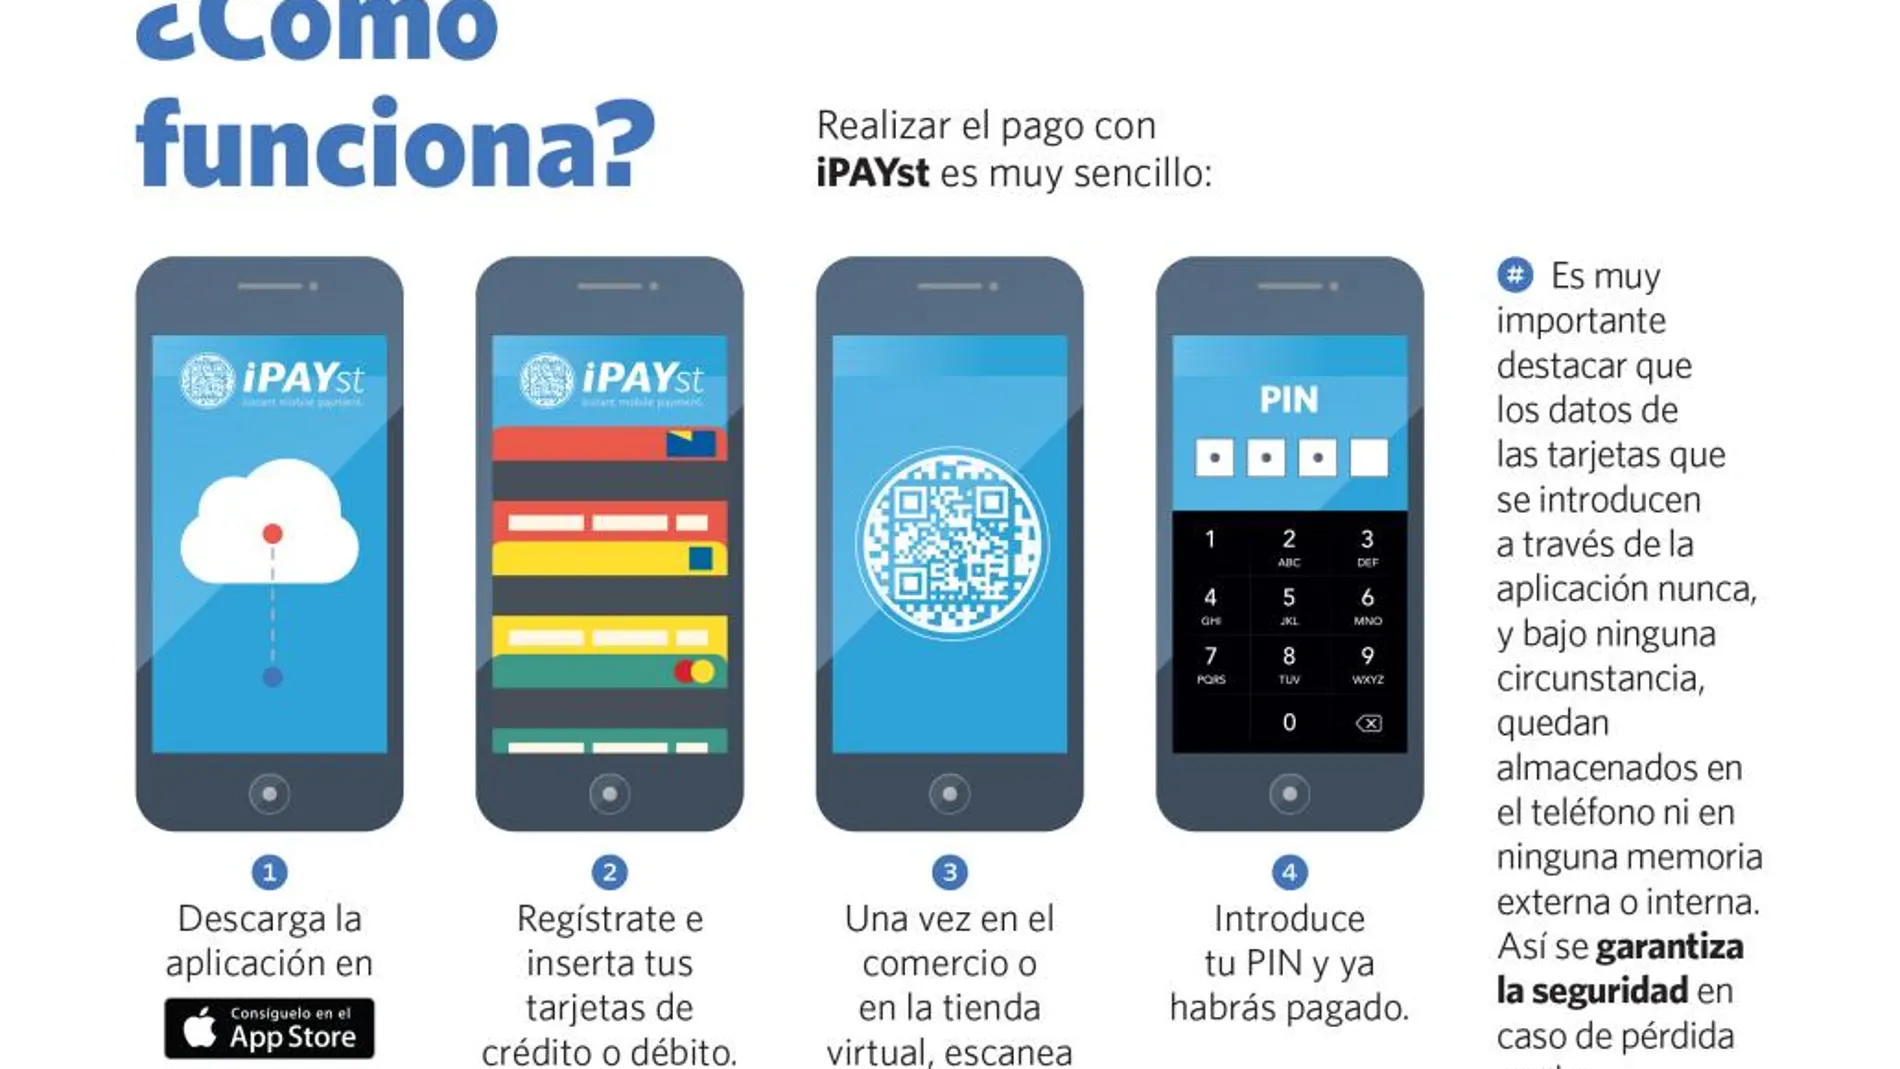 Llega a España iPAYst, un sistema de pago sencillo y seguro a través de dispositivos móviles